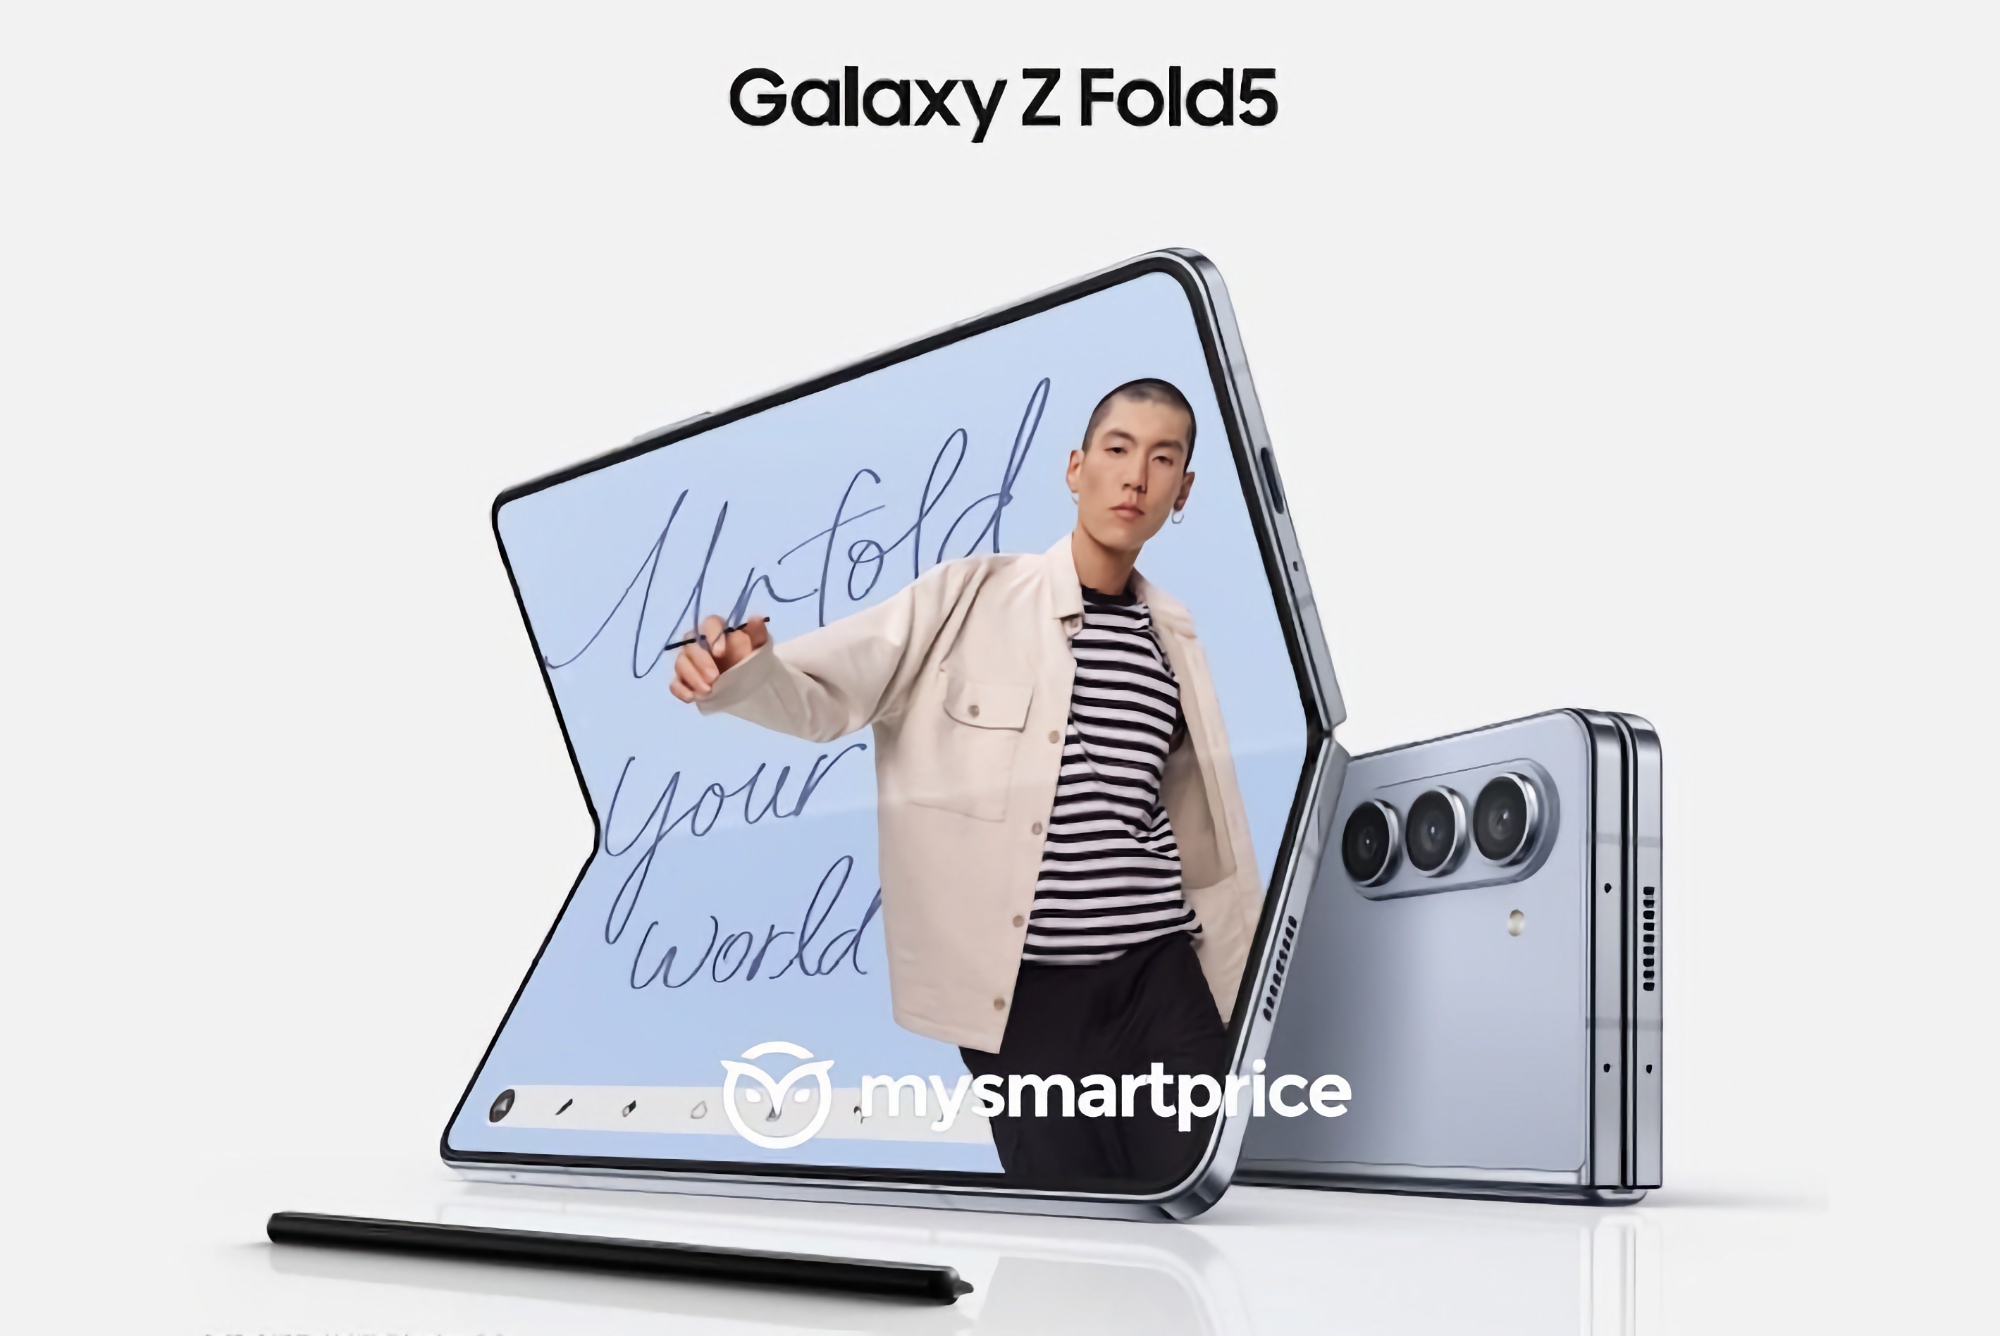 Moins cher que le Samsung Galaxy Fold 4 : inider révèle le prix du smartphone pliable Galaxy Fold 5